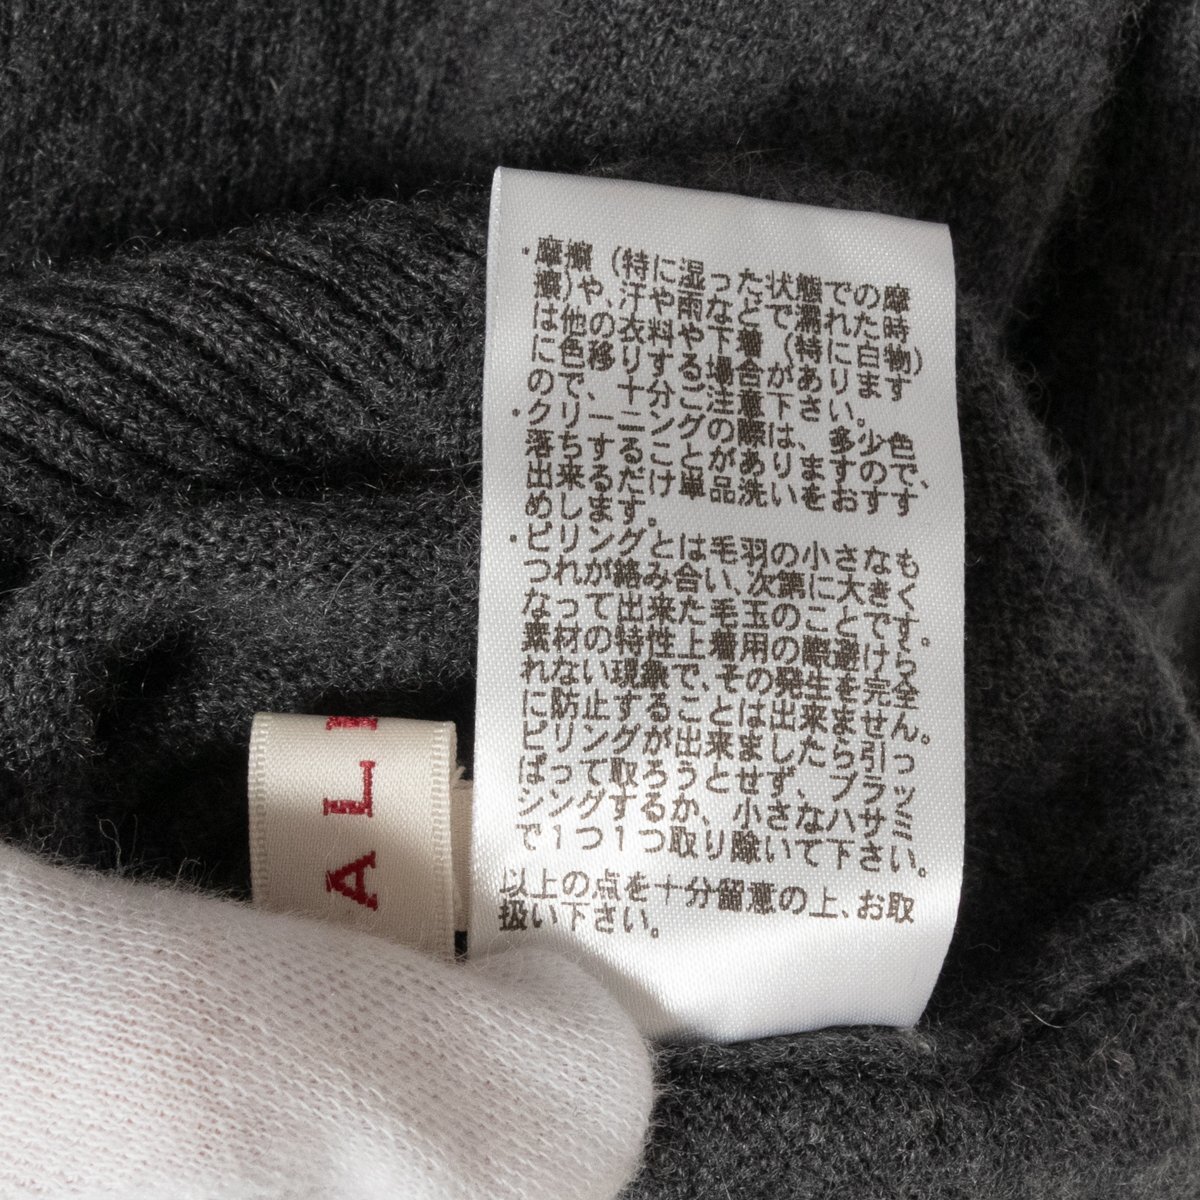 ALPHA Alpha mok шея вязаный кашемир свитер угольно-серый M размер женский кашемир 100% одноцветный простой надеты маваси осень-зима 